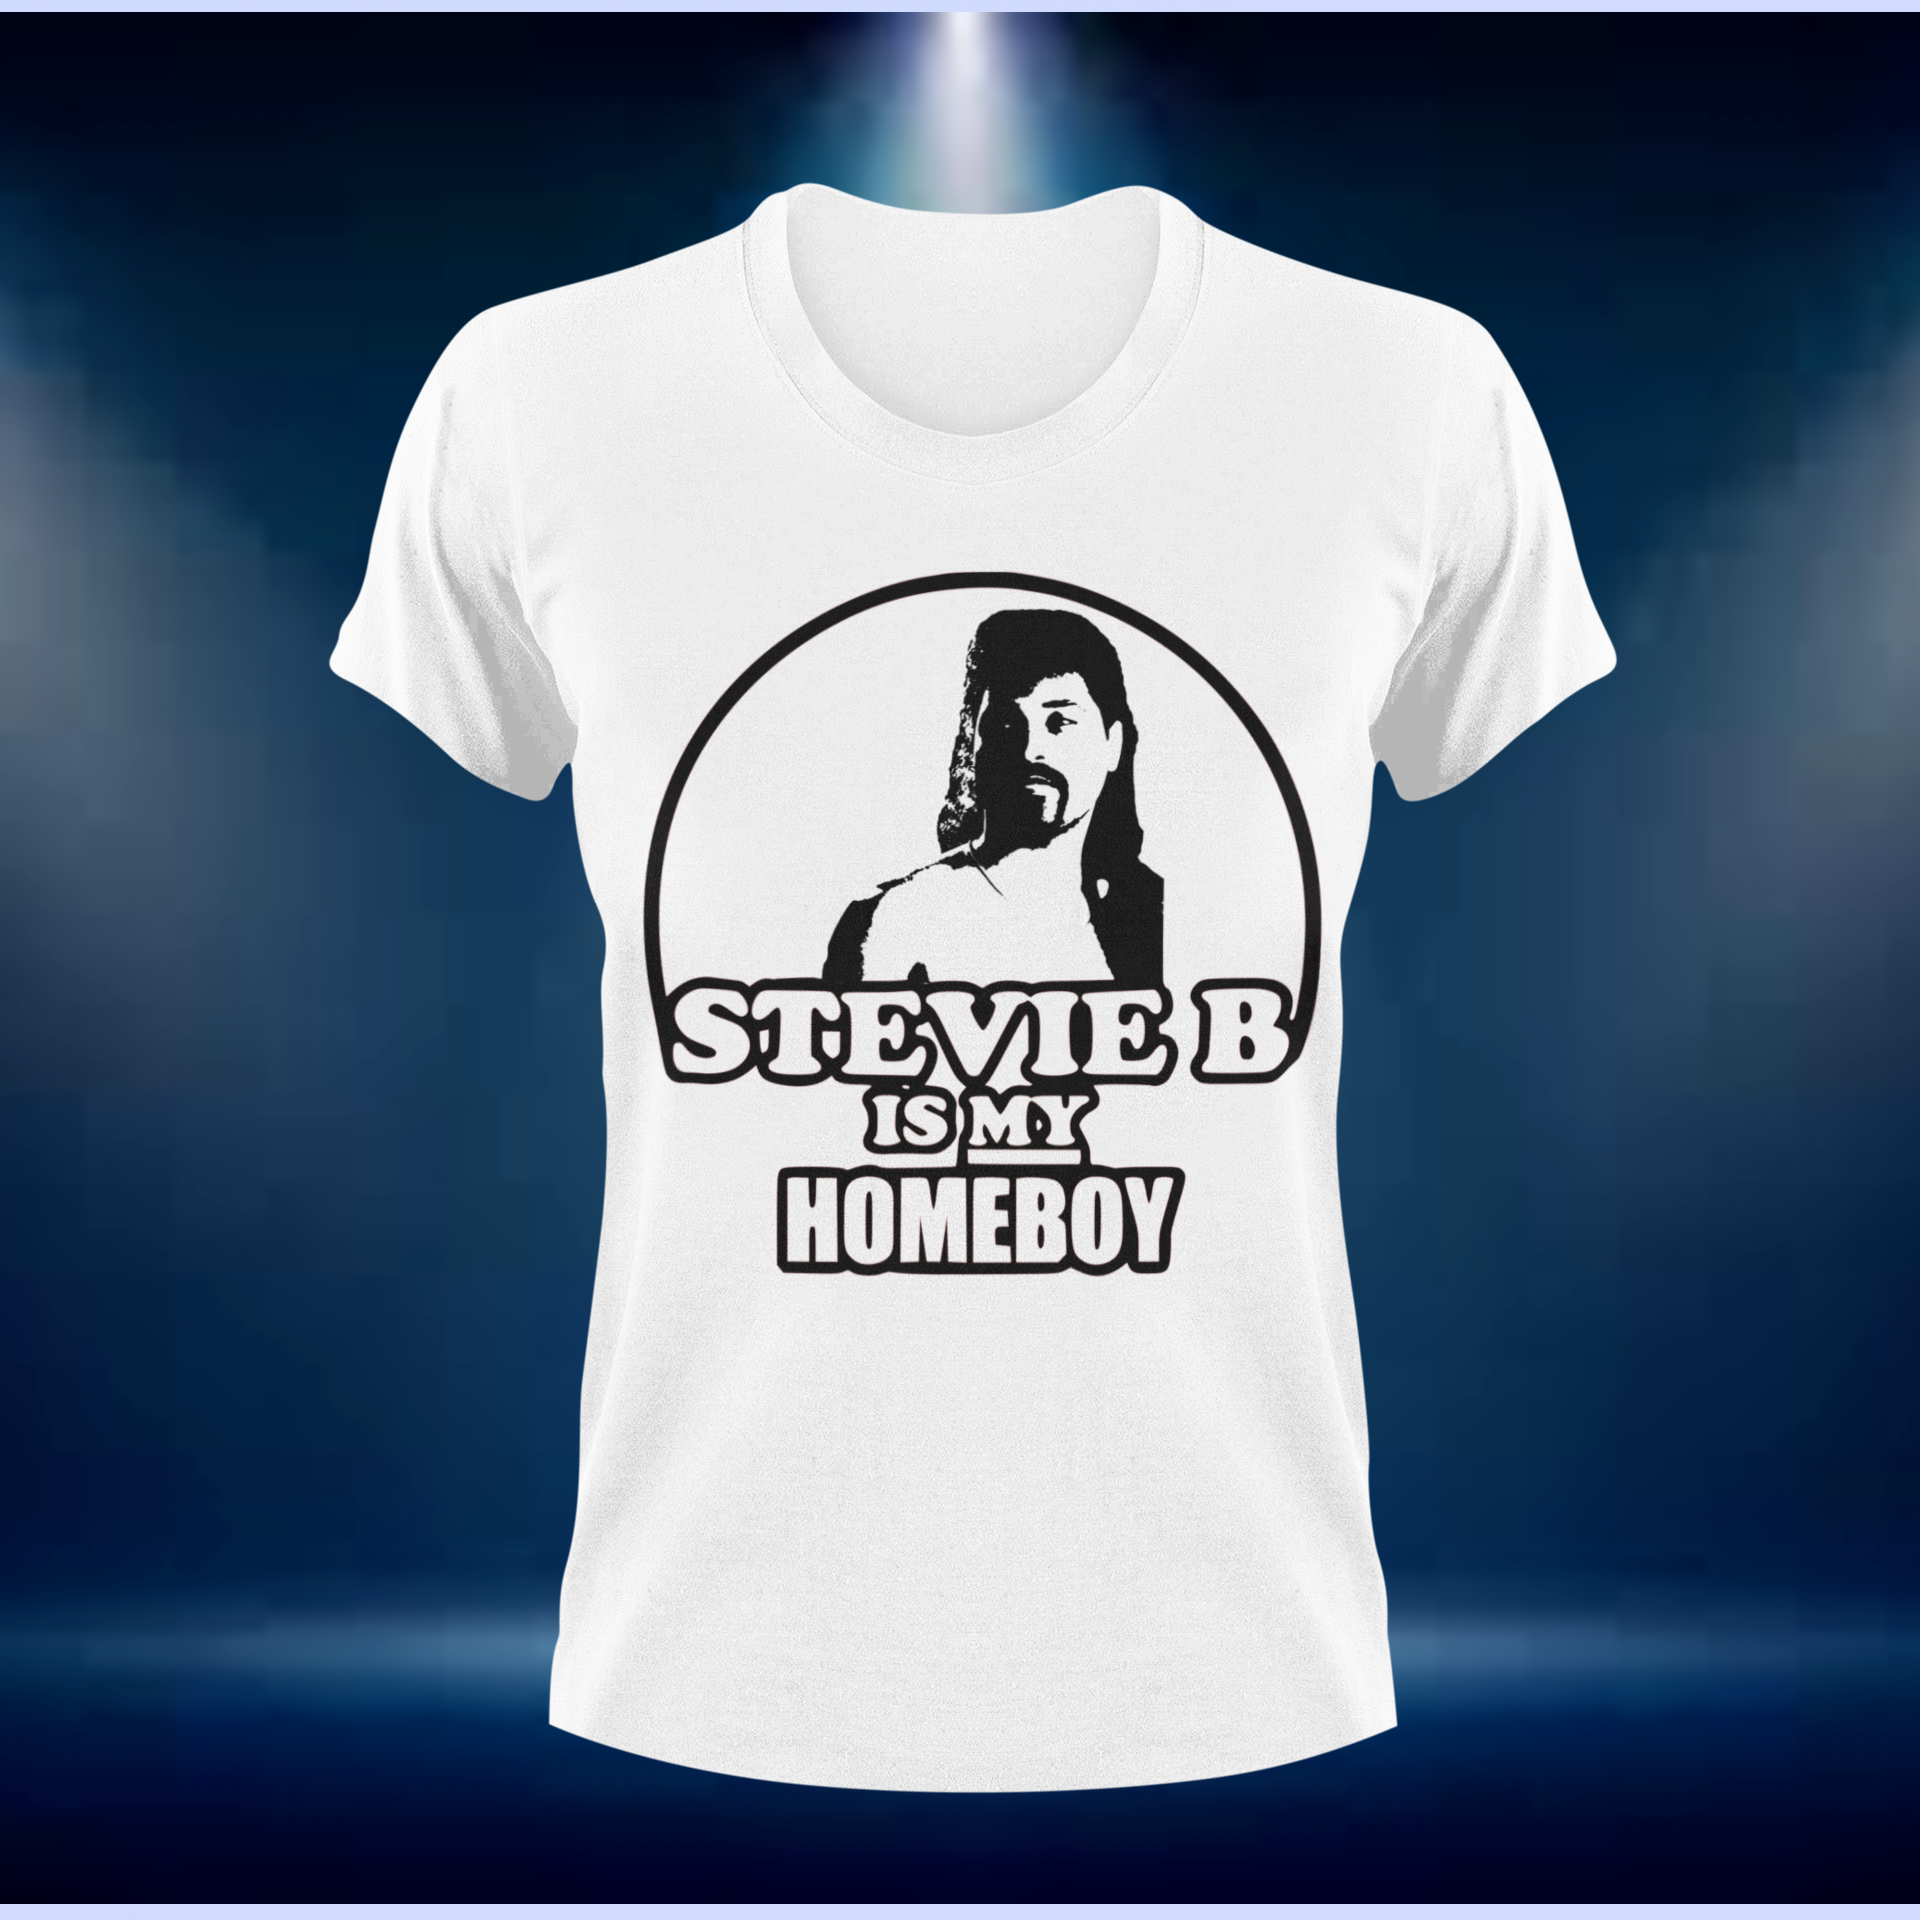 Stevie B Is my homeboy version 1 logo Tee.